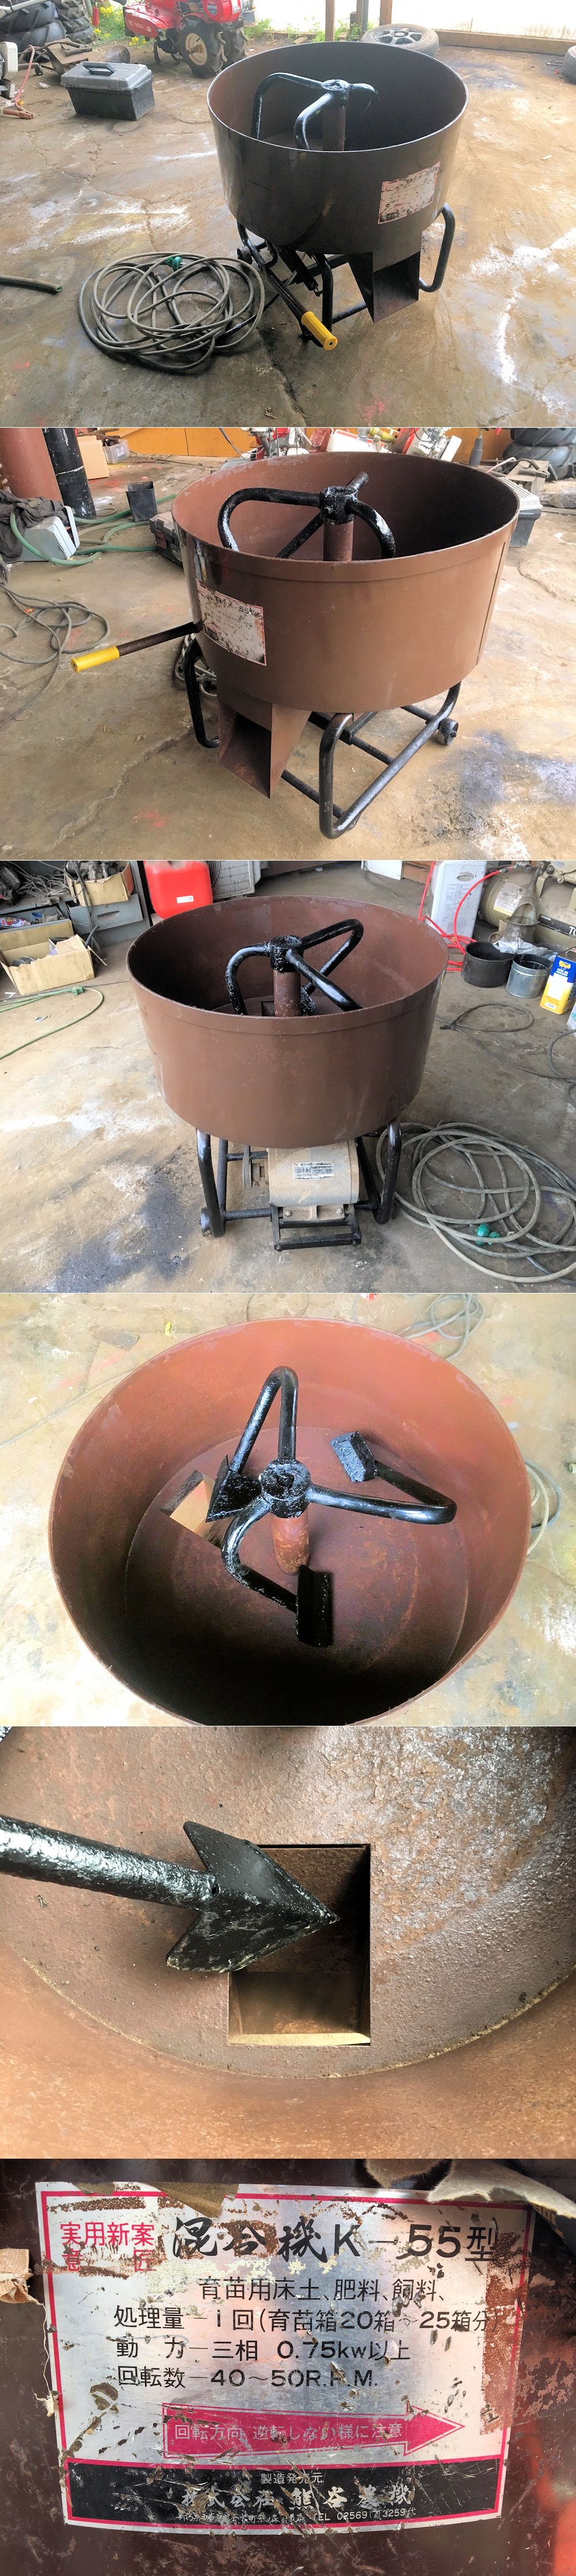 熊谷農機 ミキサー 攪拌機 混合機 肥料 モルタル コンクリートミキサー 